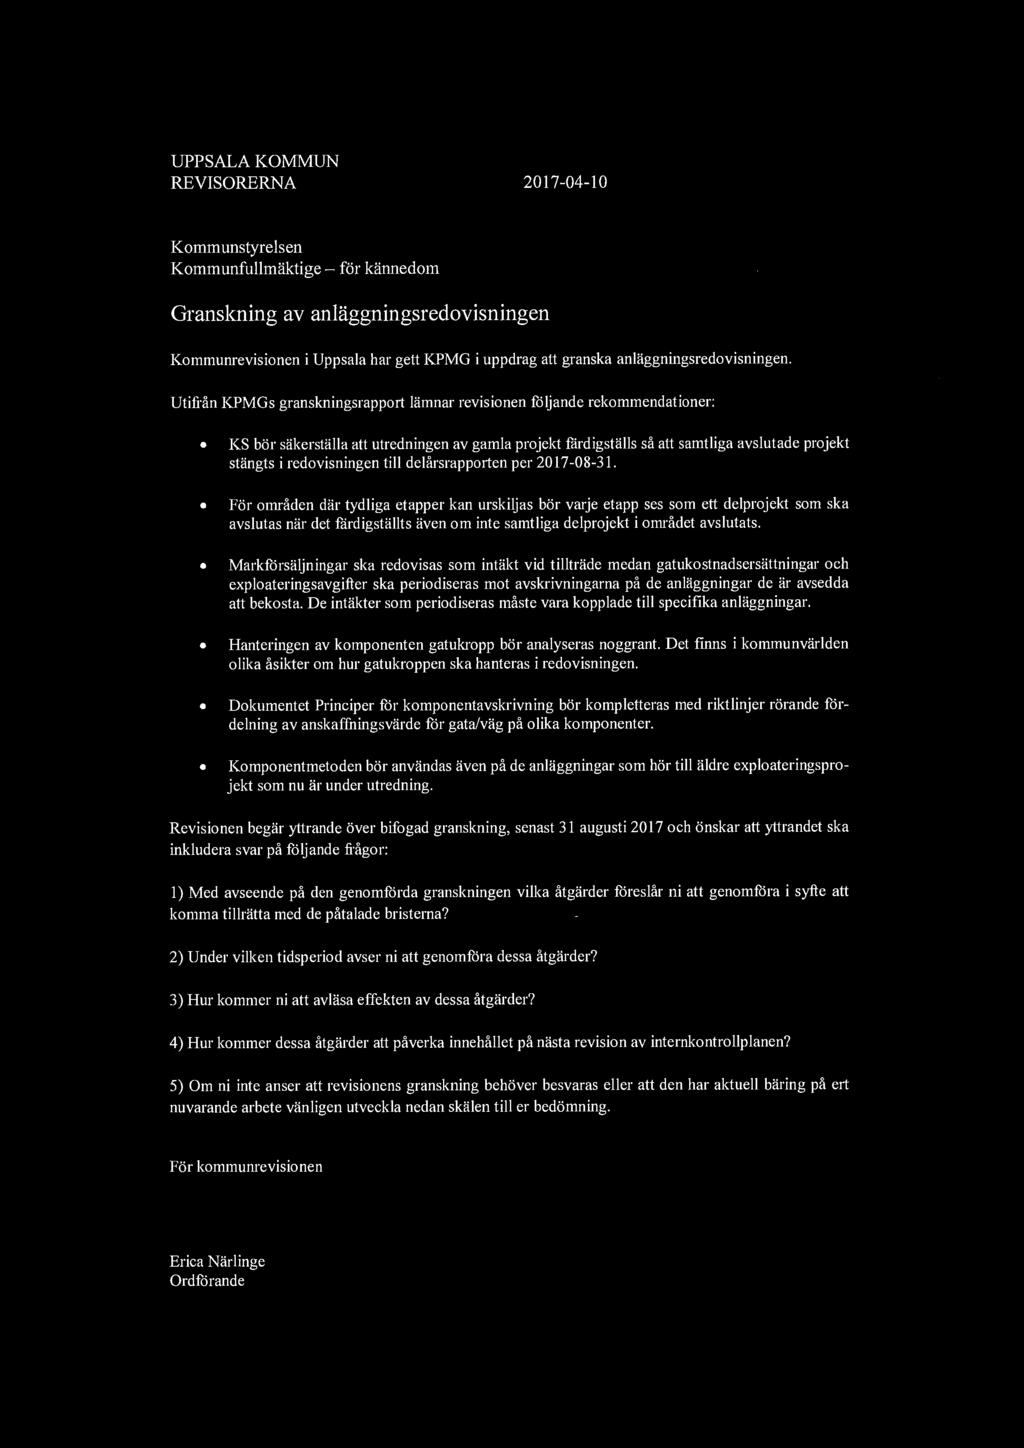 UPPSALA KOMMUN REVISORERNA 2017-04-10 Kommunstyrelsen Kommunfullmaktige - for kannedom Granskning av anlaggningsredovisningen Kommunrevisionen i Uppsala har gett KPMG i uppdrag att granska